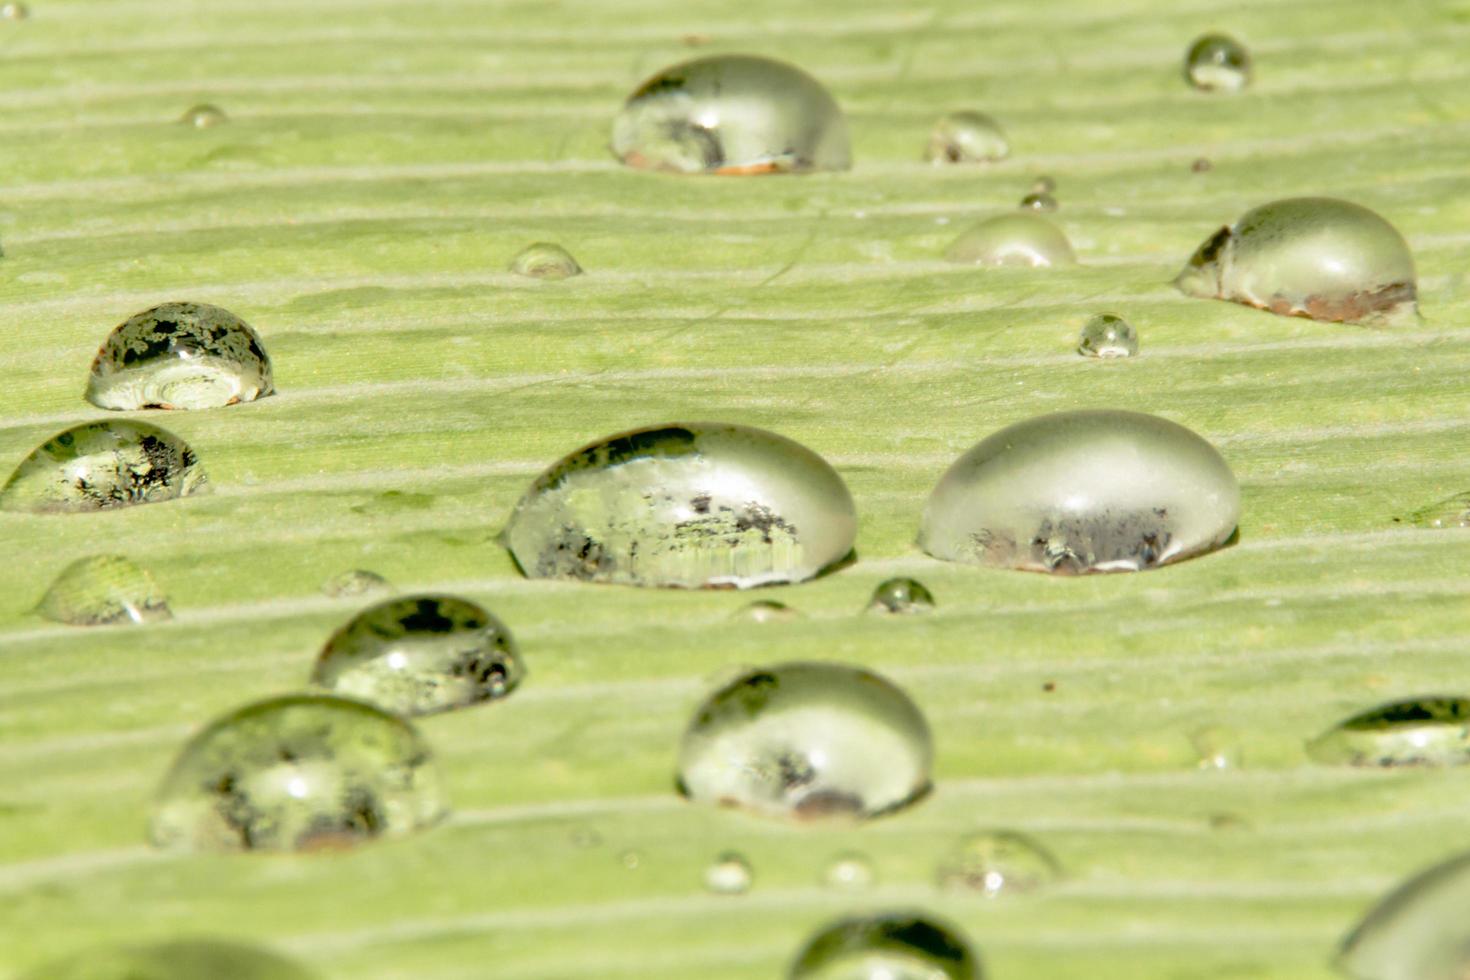 des perles d'eau et des gouttelettes d'eau se sont déposées sur des feuilles vertes à peau blanche à la surface des feuilles. photo